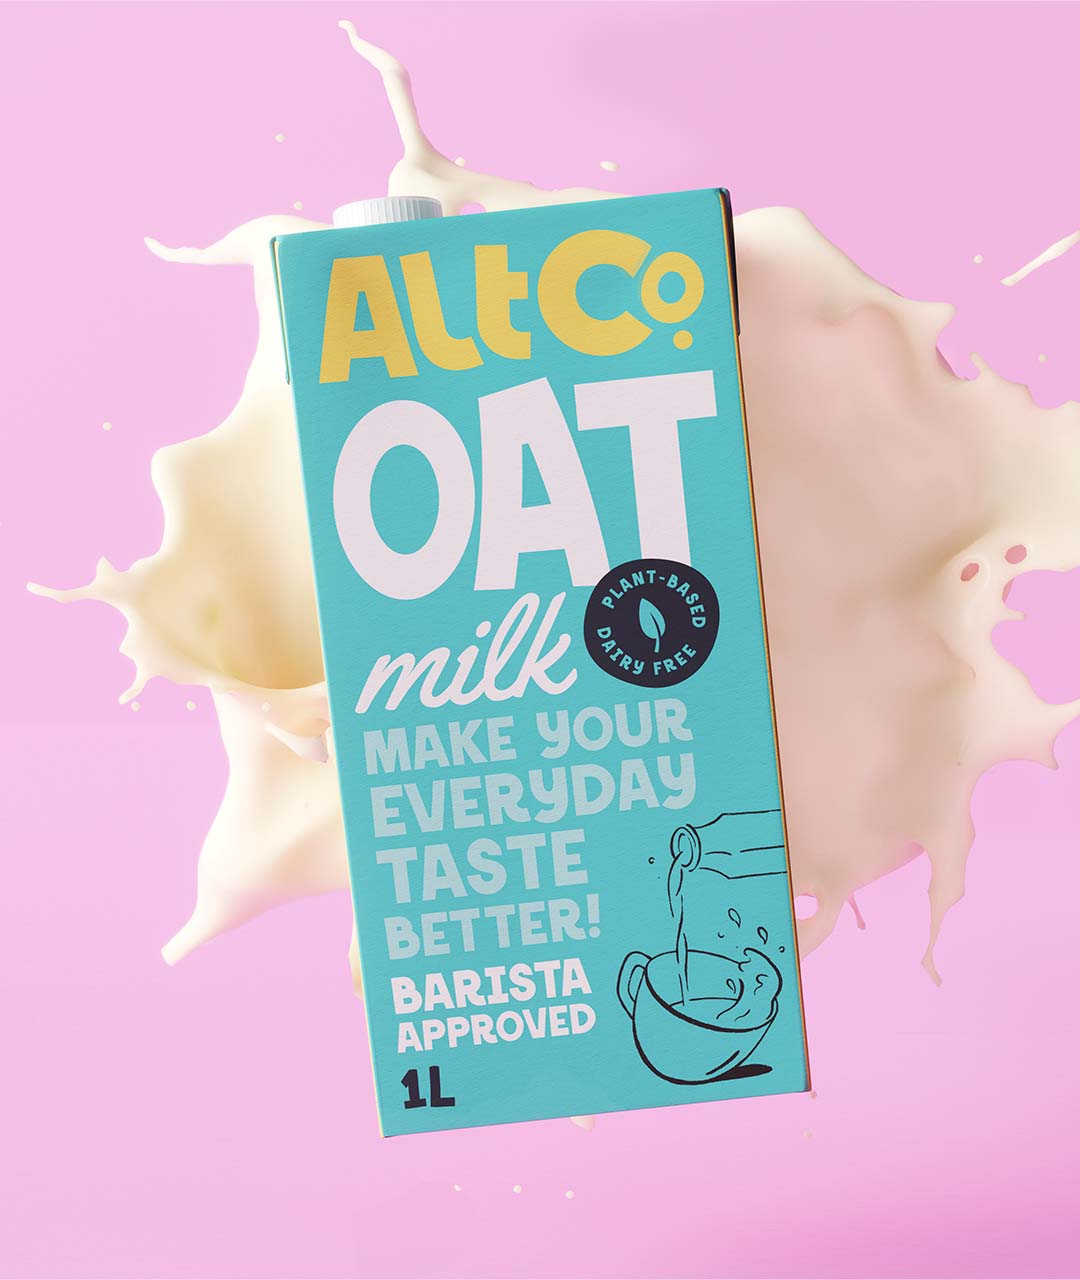 Alt Co oat milk branding